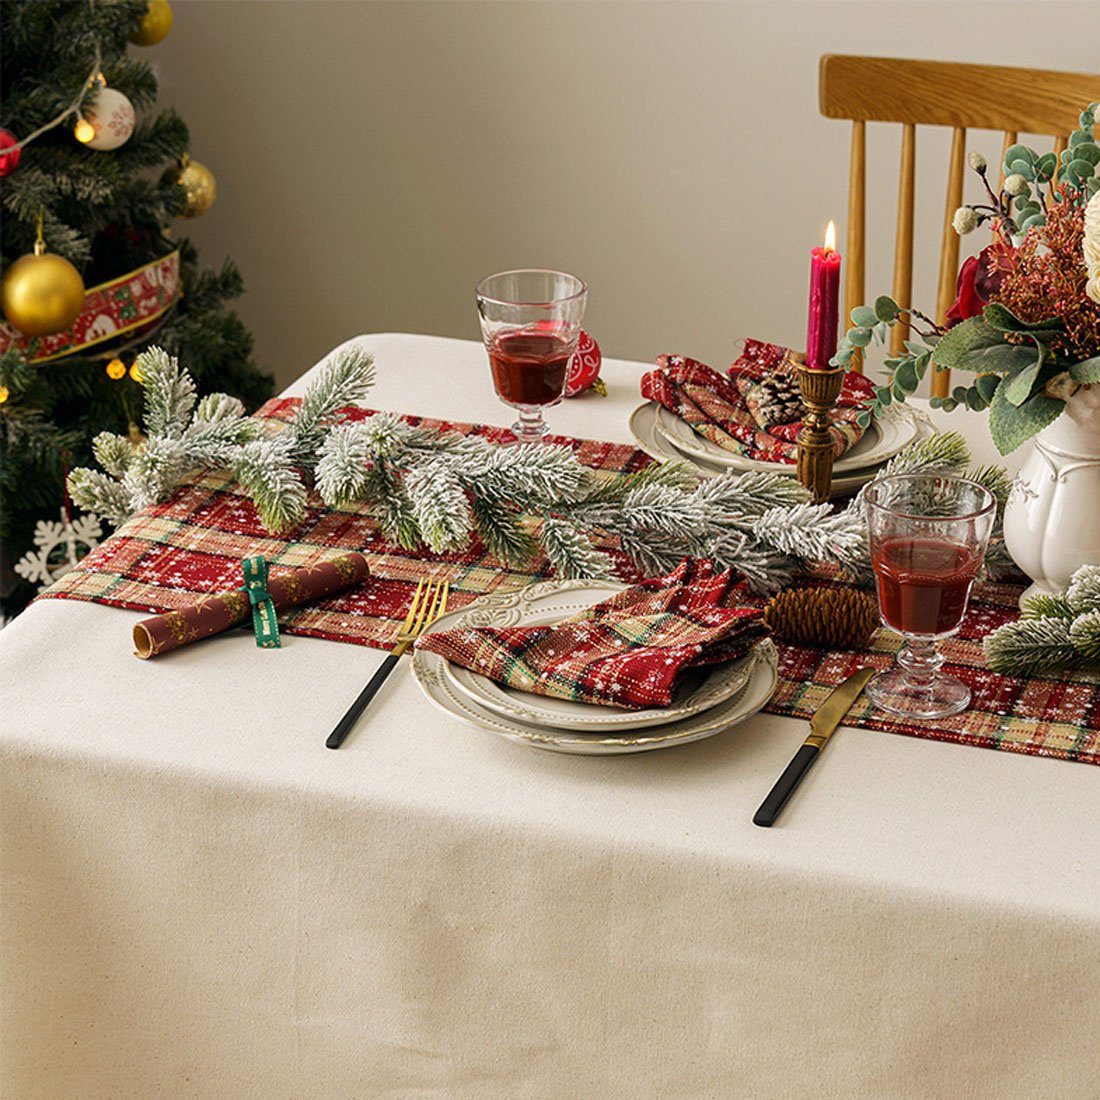 festliche DÖRÖY bedruckter Tischläufer, Tischfahnen Weihnachtsdekoration 40*180cm Tischläufer